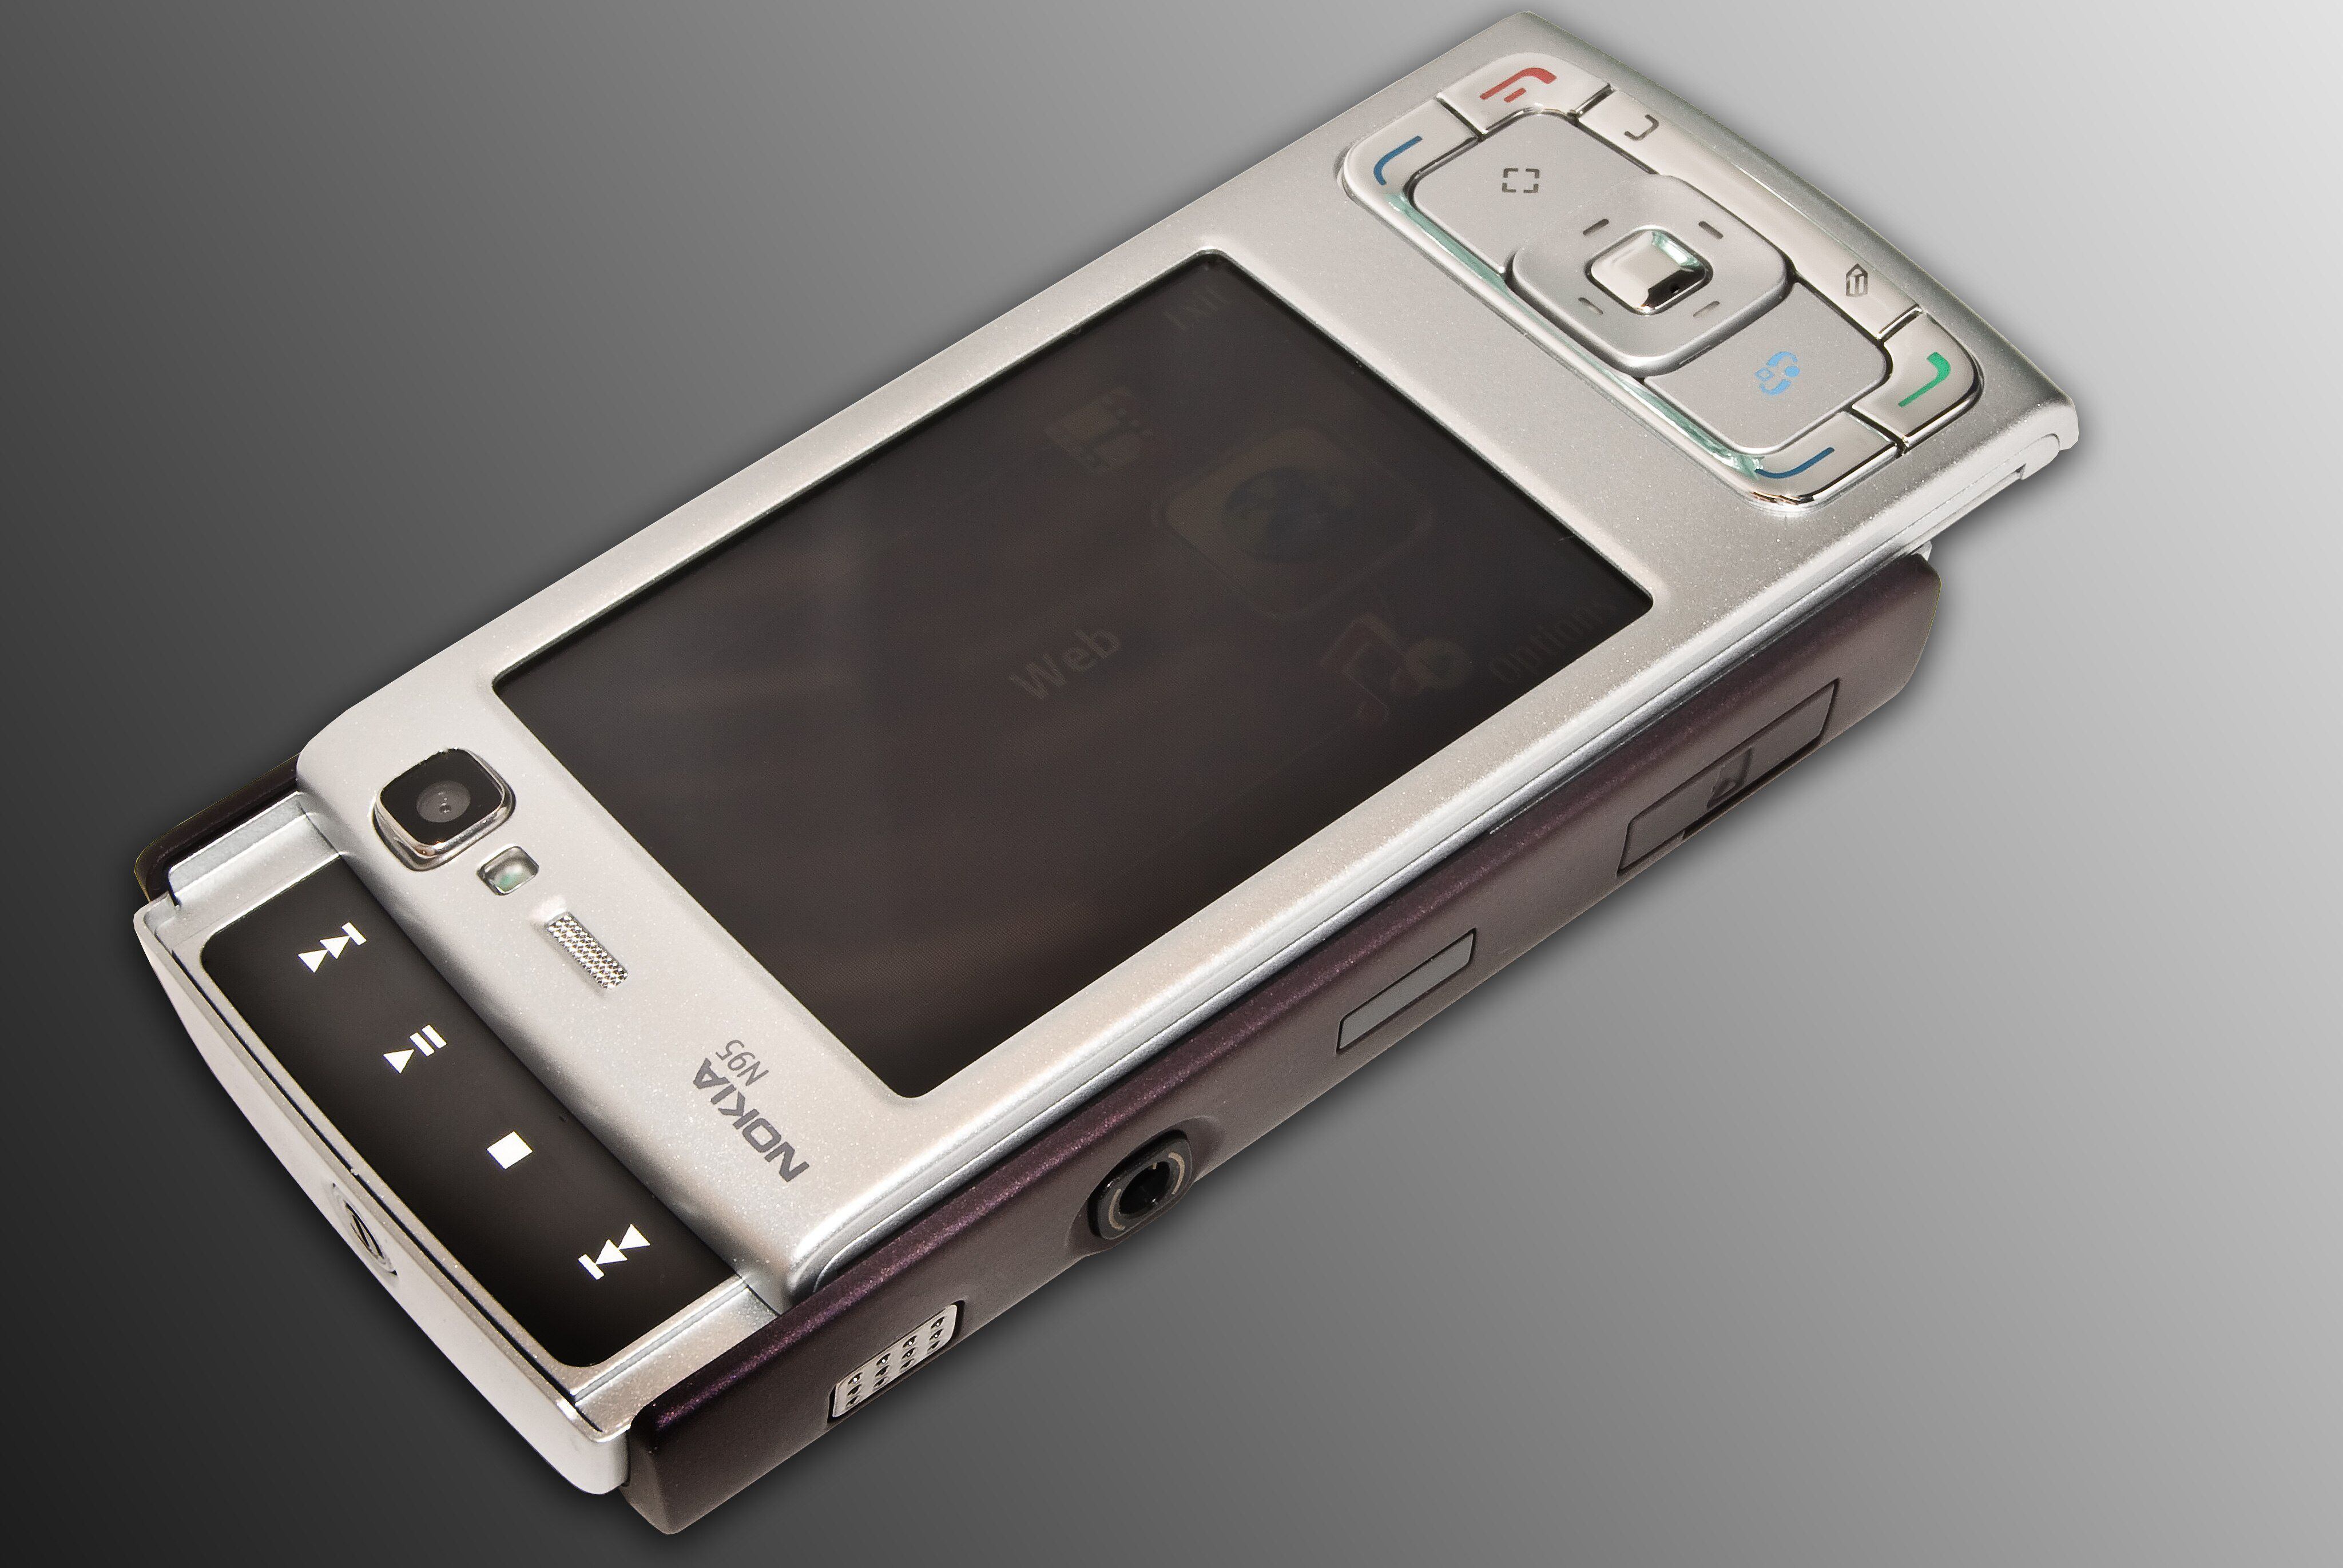 Nokia ressuscita 3310 e traz nova versão do 'jogo da cobrinha